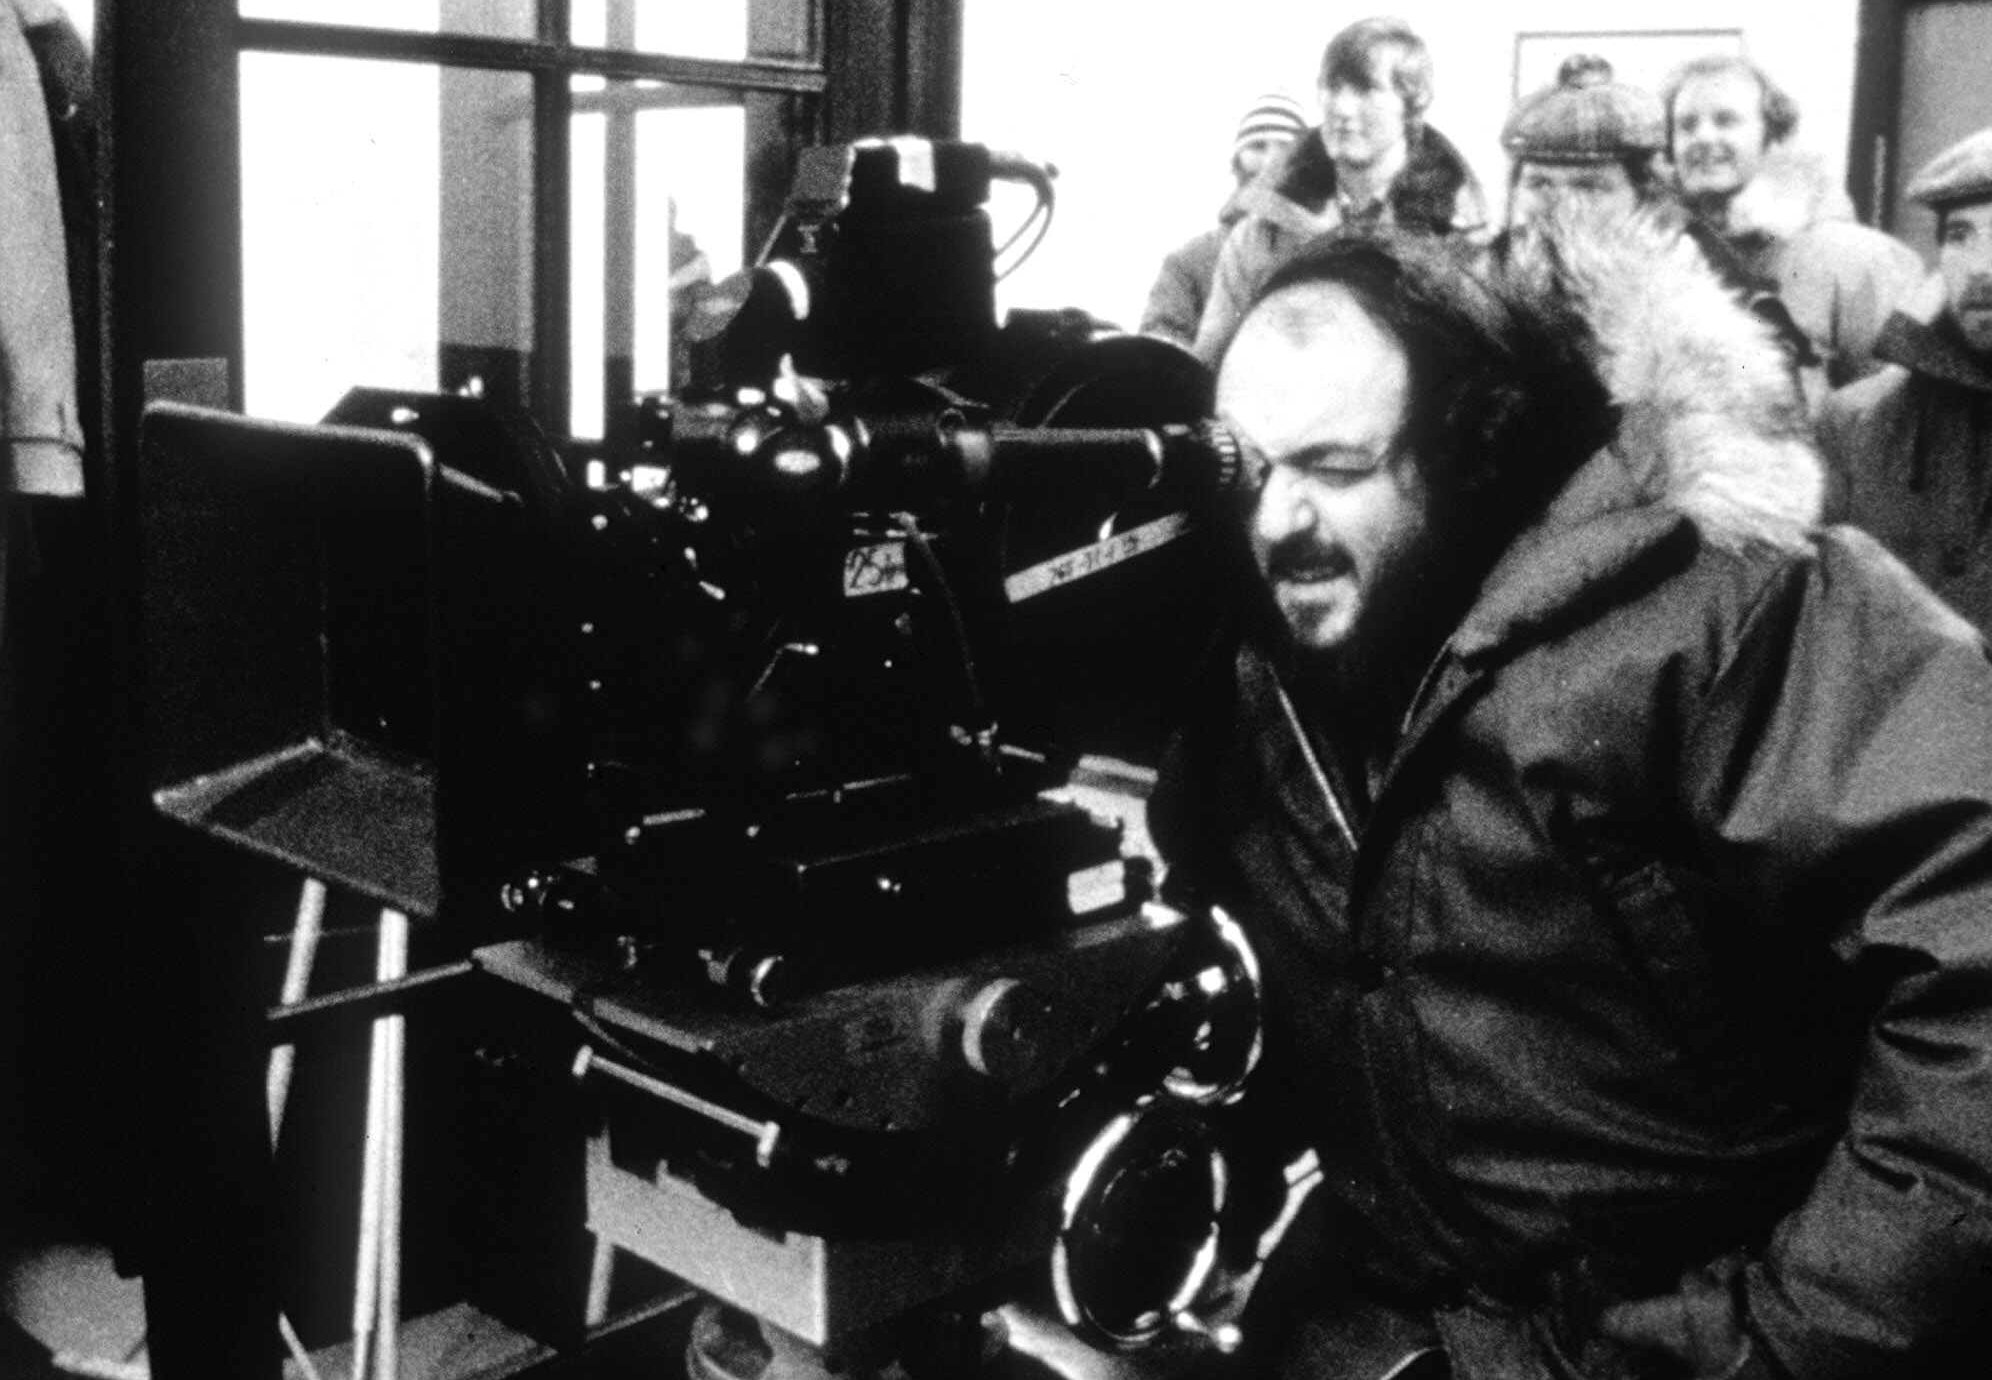 Scholar reveals morbid roots of lost Stanley Kubrick script